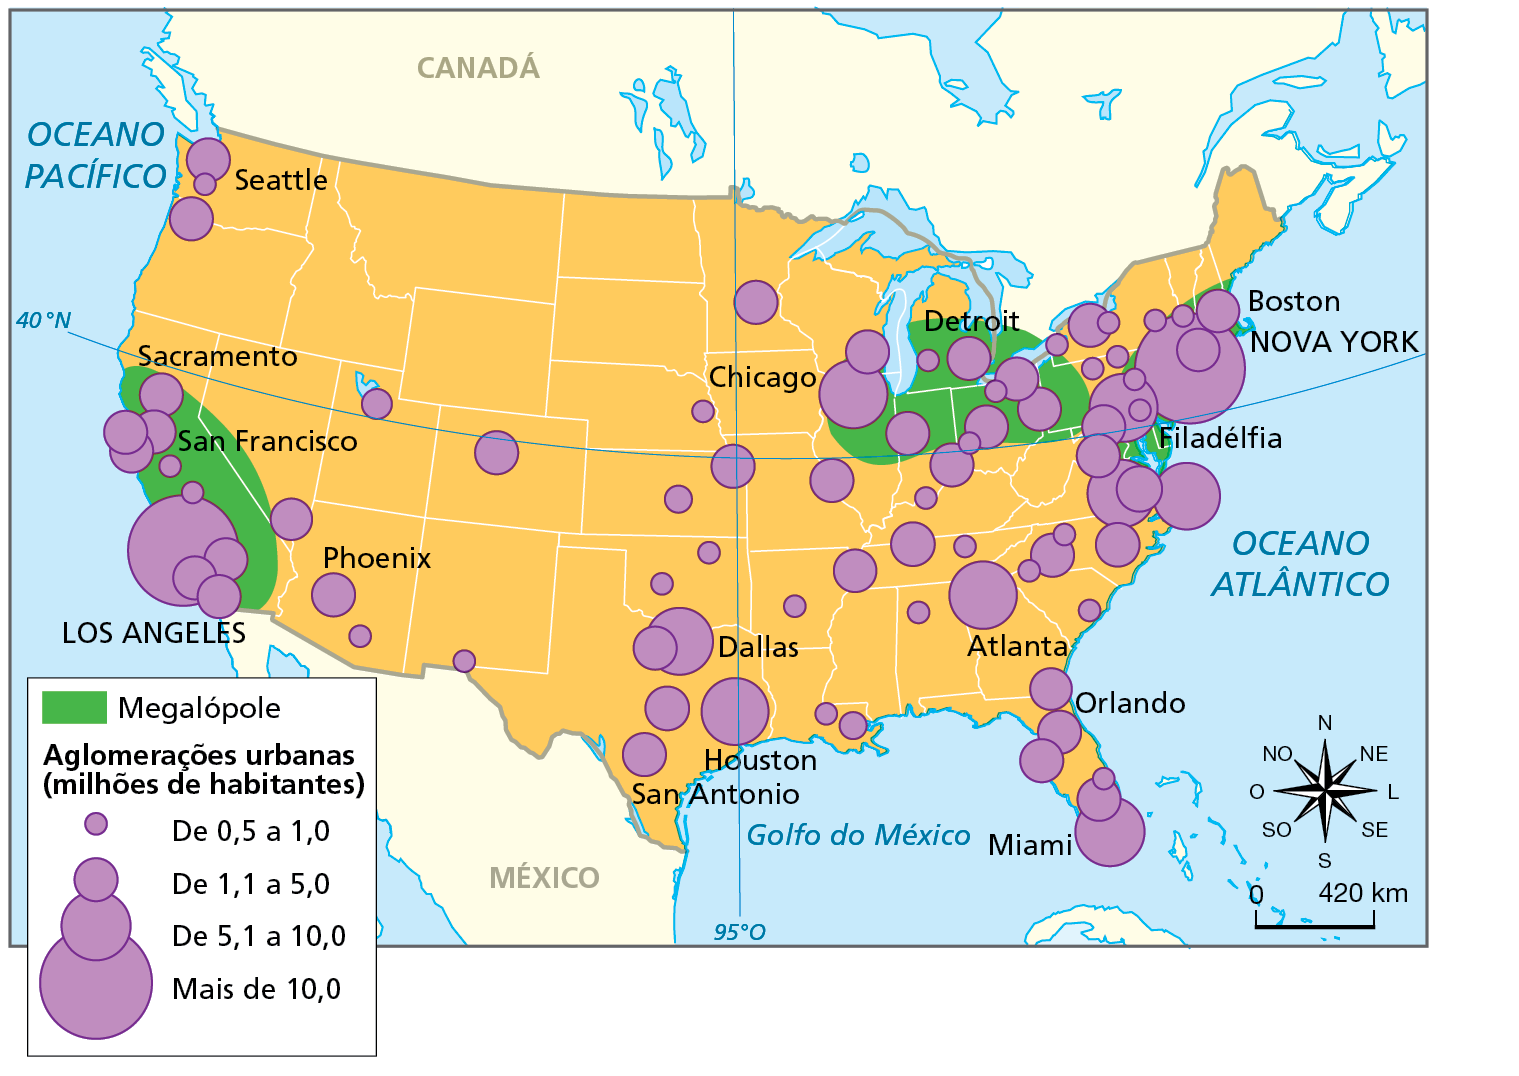 Mapa. Estados Unidos: aglomerações urbanas e megalópoles, 2019. Mapa de parte da América do Norte e das maiores aglomerações urbanas (em milhões de habitantes) e a localização das megalópoles dos Estados Unidos.  Megalópole, área em verde: mancha engloba aglomerações urbanas no nordeste do país e outra mancha engloba aglomerações urbanas na costa sudoeste.  Aglomerações urbanas  De 0,5 a 1,0 milhão de habitantes: há diversas aglomerações nas porções centro-leste, nordeste e sudoeste dos Estados Unidos.  De 1,1 a 5,0 milhões de habitantes: há diversas aglomerações urbanas nas porções centro-leste, sudeste, nordeste, sul, noroeste e sudoeste. Algumas são Detroit e Boston, a nordeste, Orlando, a sudeste, San Antonio, ao sul, Seattle, a noroeste, e Sacramento, San Francisco e Phoenix, a sudoeste.   De 5,1 a 10,0 milhões de habitantes: há nas porções nordeste, centro-leste, leste, sudeste e sul. Algumas são Chicago e Filadélfia a nordeste, Atlanta no centro-leste, Miami no sudeste, e Houston e Dallas ao sul.  Mais de 10,0 milhões de habitantes: Nova York no nordeste e Los Angeles no sudoeste dos Estados Unidos.  À direita, rosa dos ventos e escala de zero a 420 quilômetros.